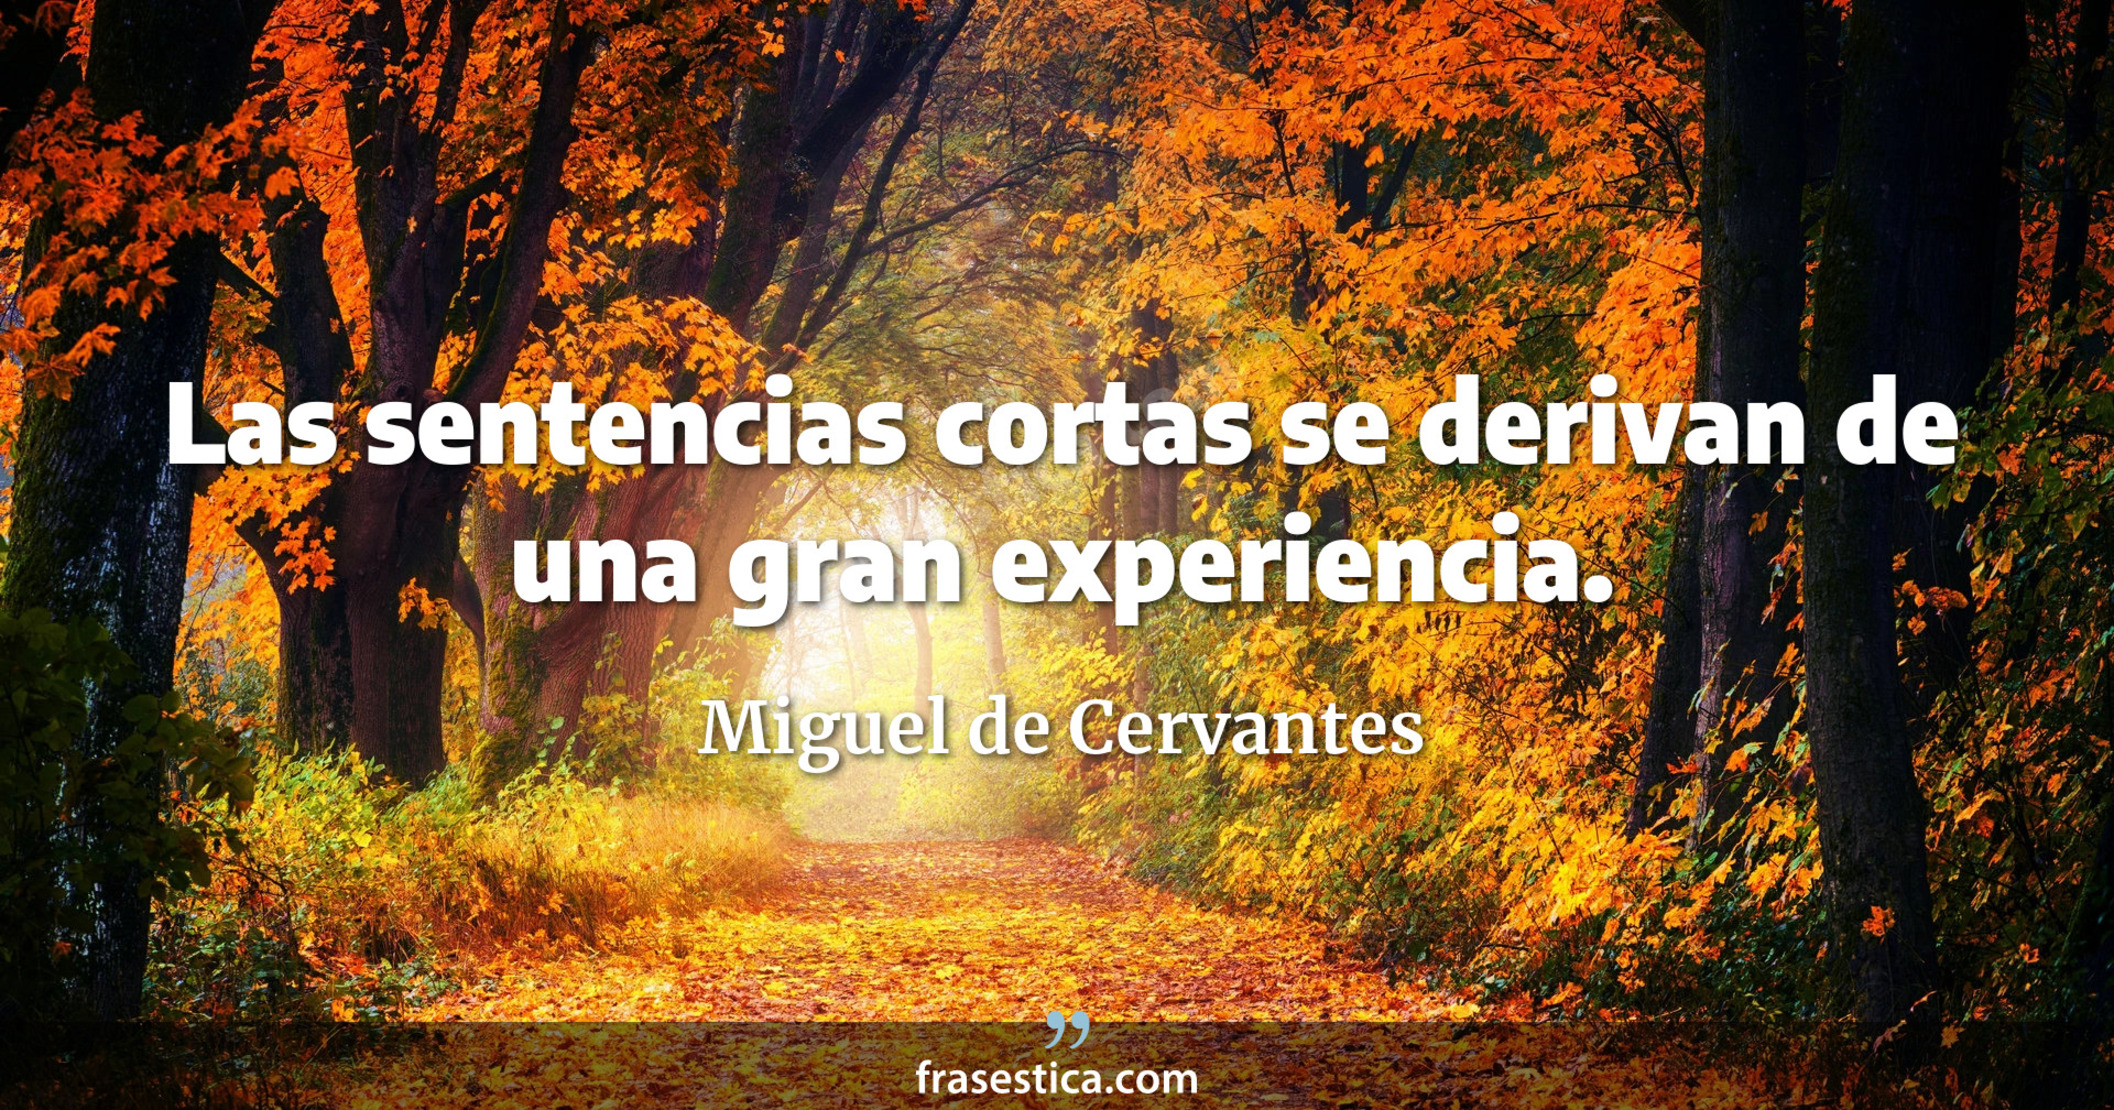 Las sentencias cortas se derivan de una gran experiencia. - Miguel de Cervantes